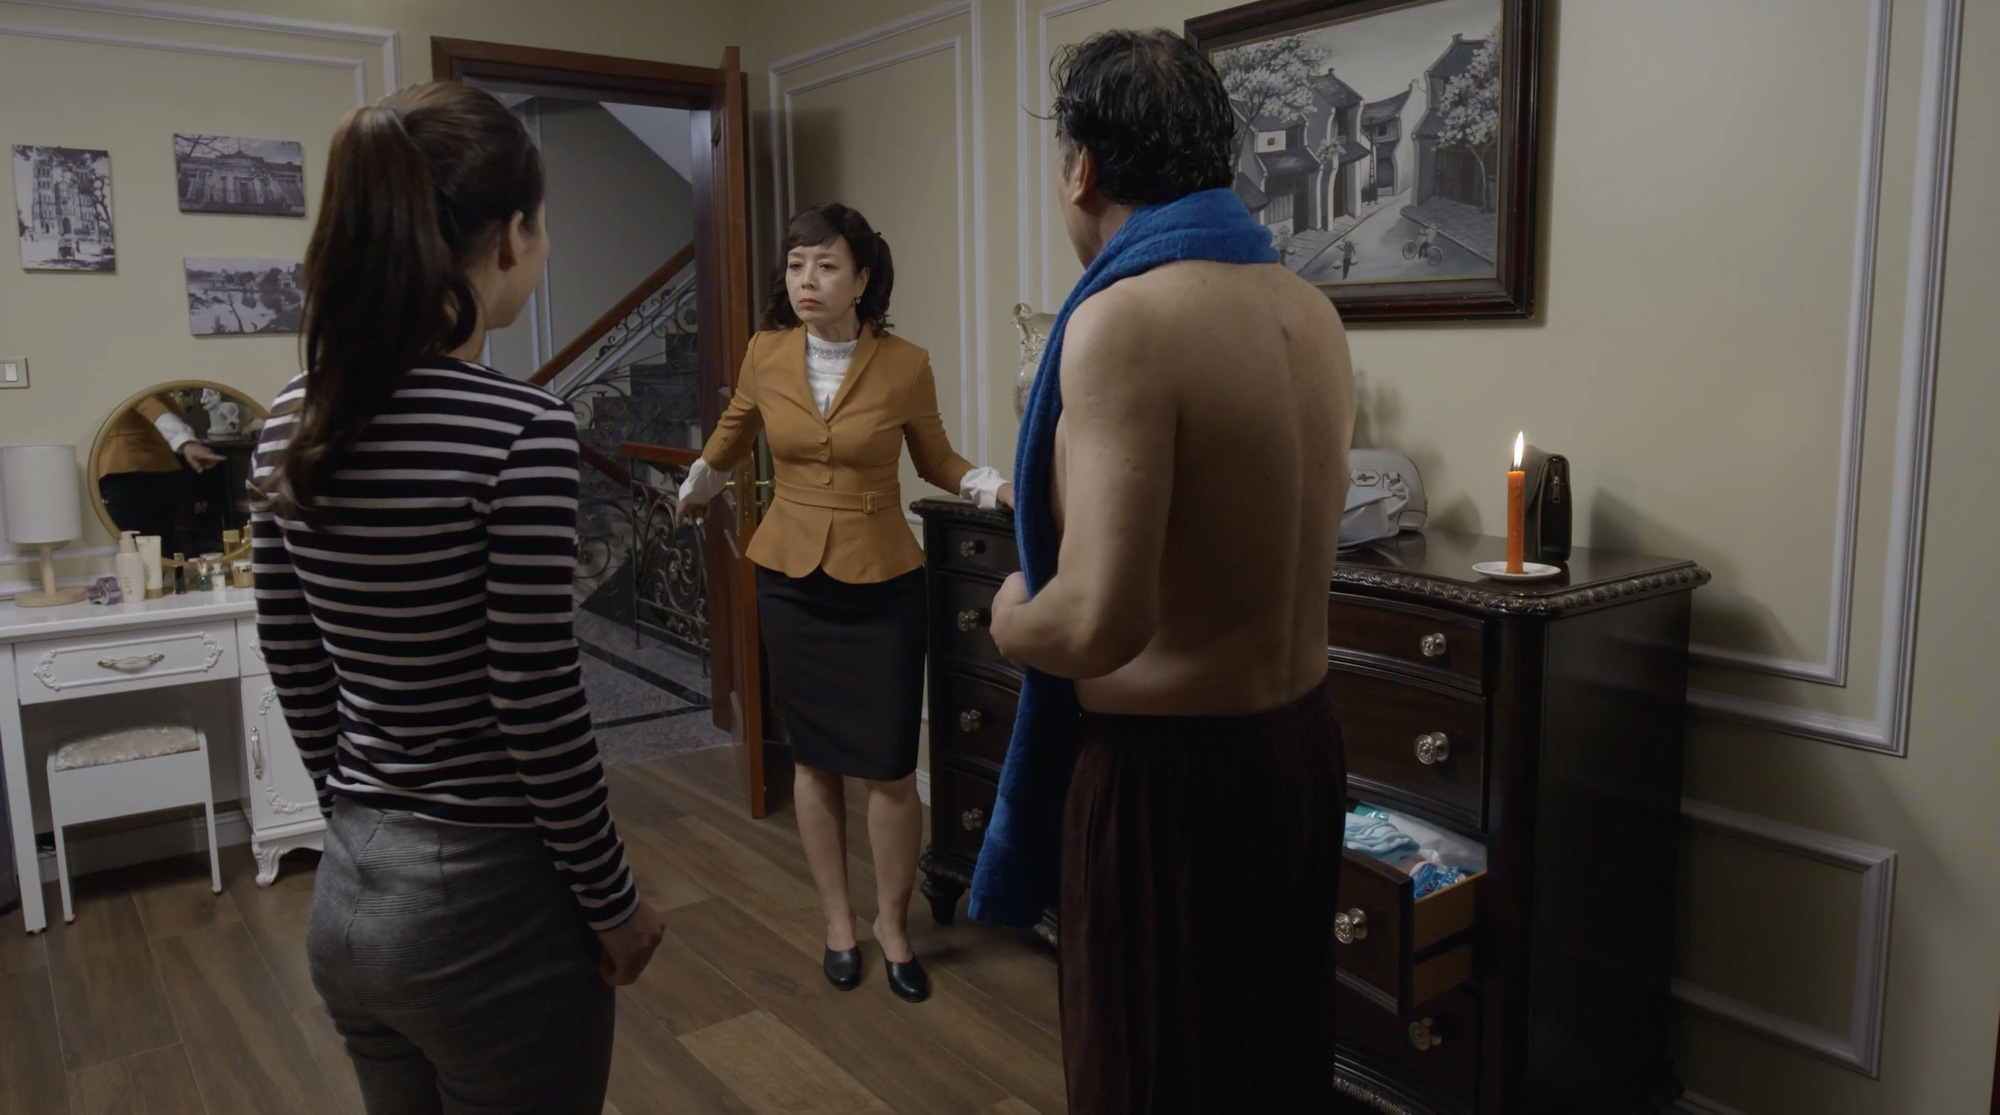 Mặt nạ hạnh phúc tập 15: Bà Trang (NSƯT Chiều Xuân) bắt gặp cảnh giúp việc ngã lên người chồng đang cởi trần - Ảnh 3.